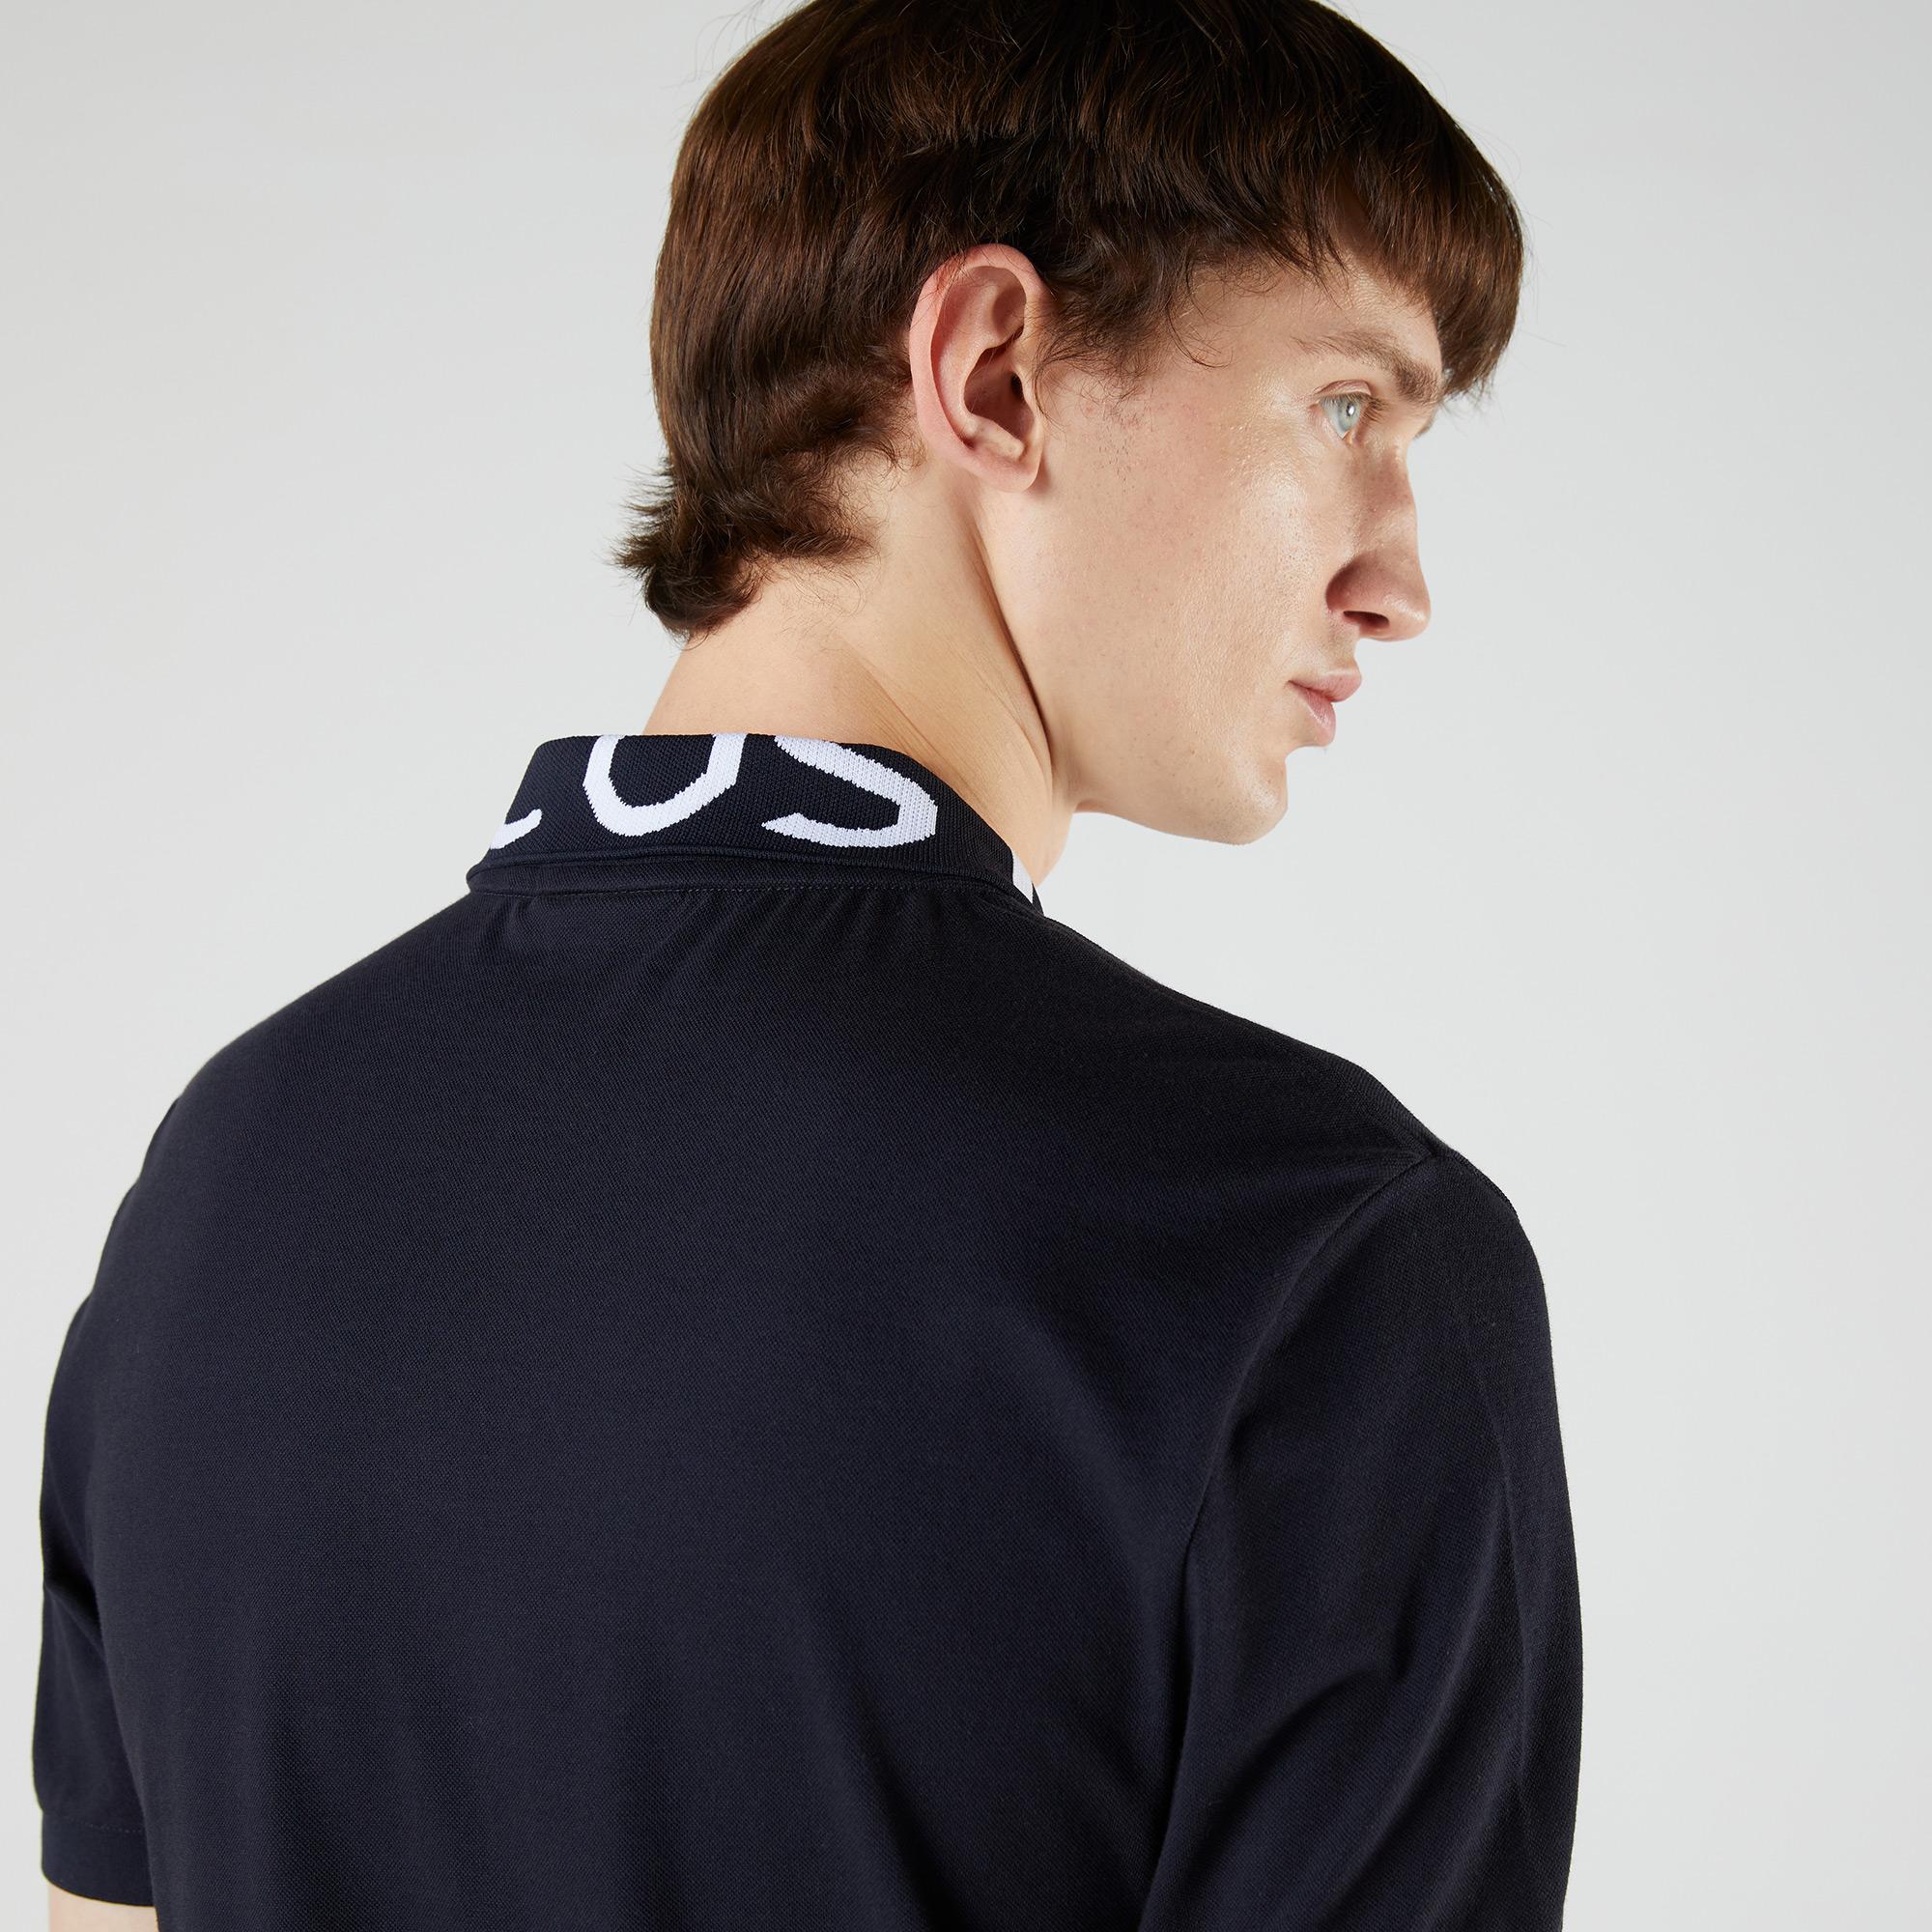 Lacoste Men’s Slim Fit Lettered Neck Light Breathable Piqué Polo Shirt